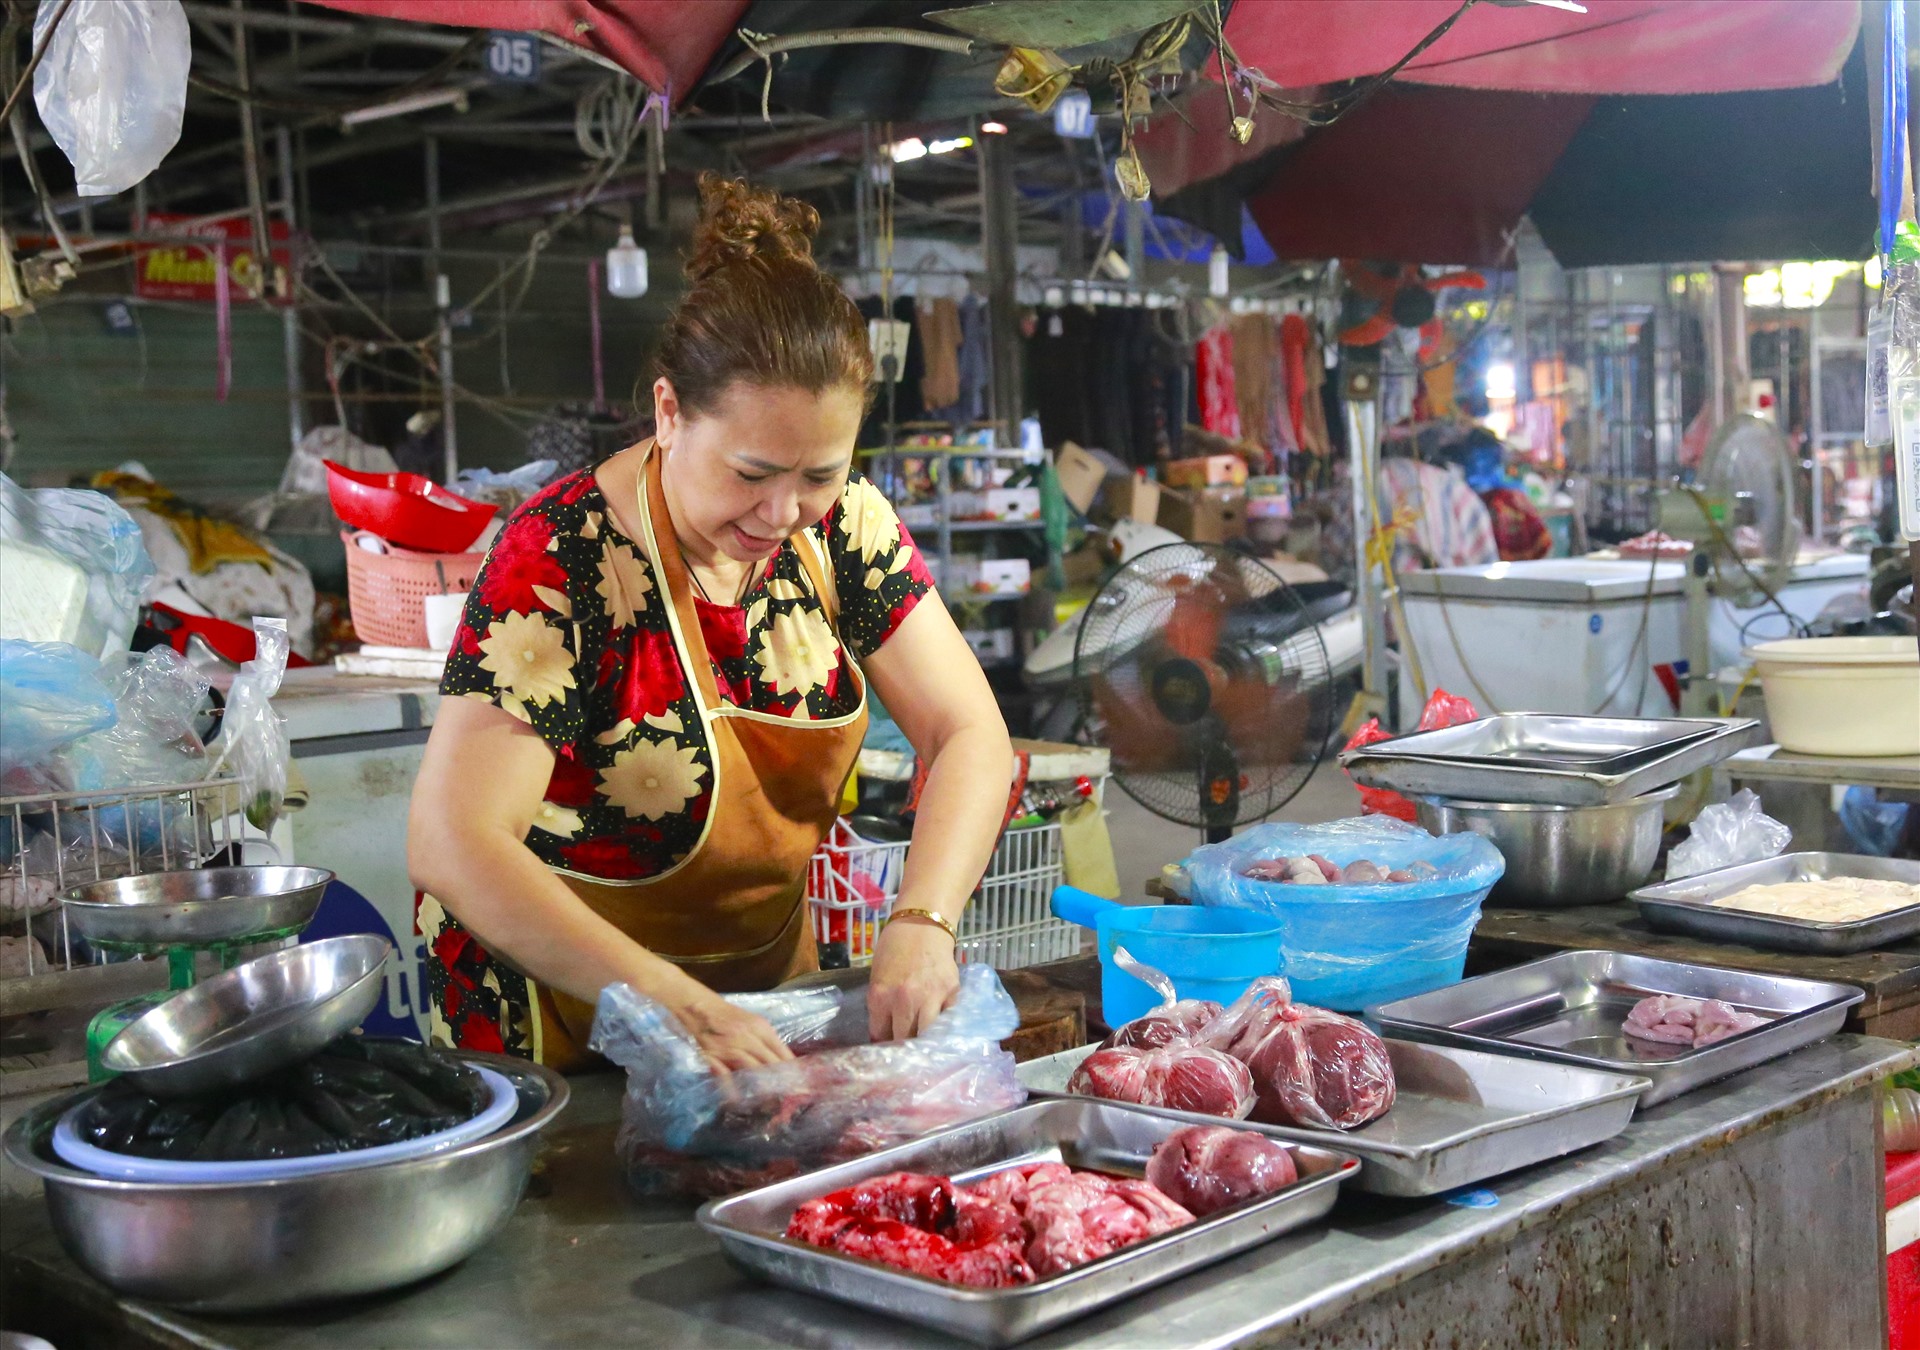 án hàng thịt từ năm 1994, bà Nguyễn Thị Loan - tiểu thương chợ tạm Phú Đô bất lực nói: “Chợ này chỉ toàn người bán, không có người mua. Ngồi ở đây cảm như giữ chỗ. Ruộng không có, công việc cũng khó kiếm, nên cứ ngồi ở đây ngày này qua ngày khác, mòn mỏi cũng đã gần 7 năm“.